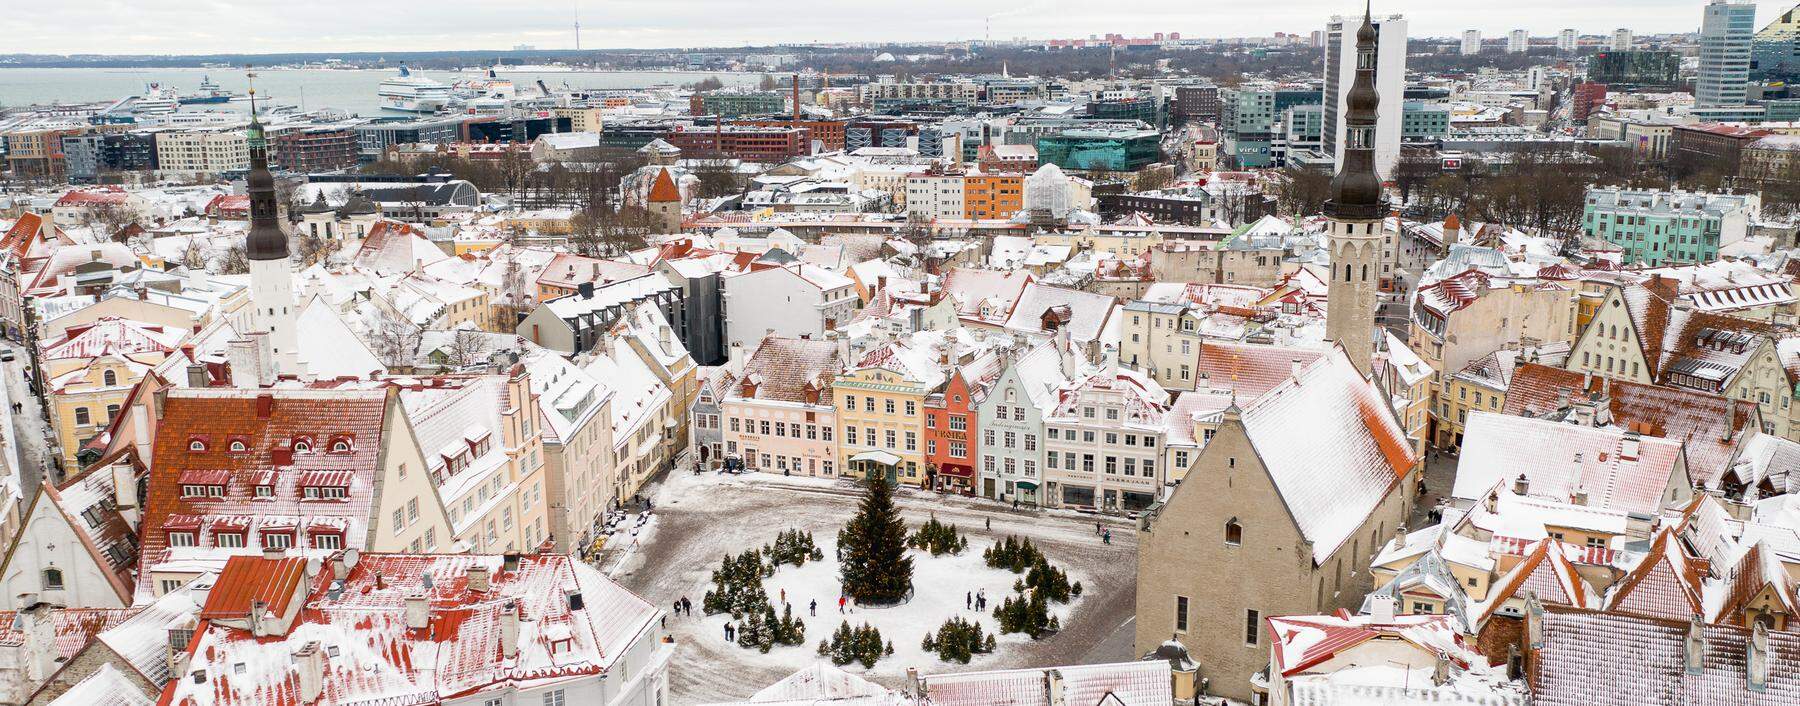 ensembleschutz. Tallinn hat eine der am besten erhaltenen mittelalterlichen Altstädte Euro-
pas. Heißt: Unesco-Weltkulturerbe.